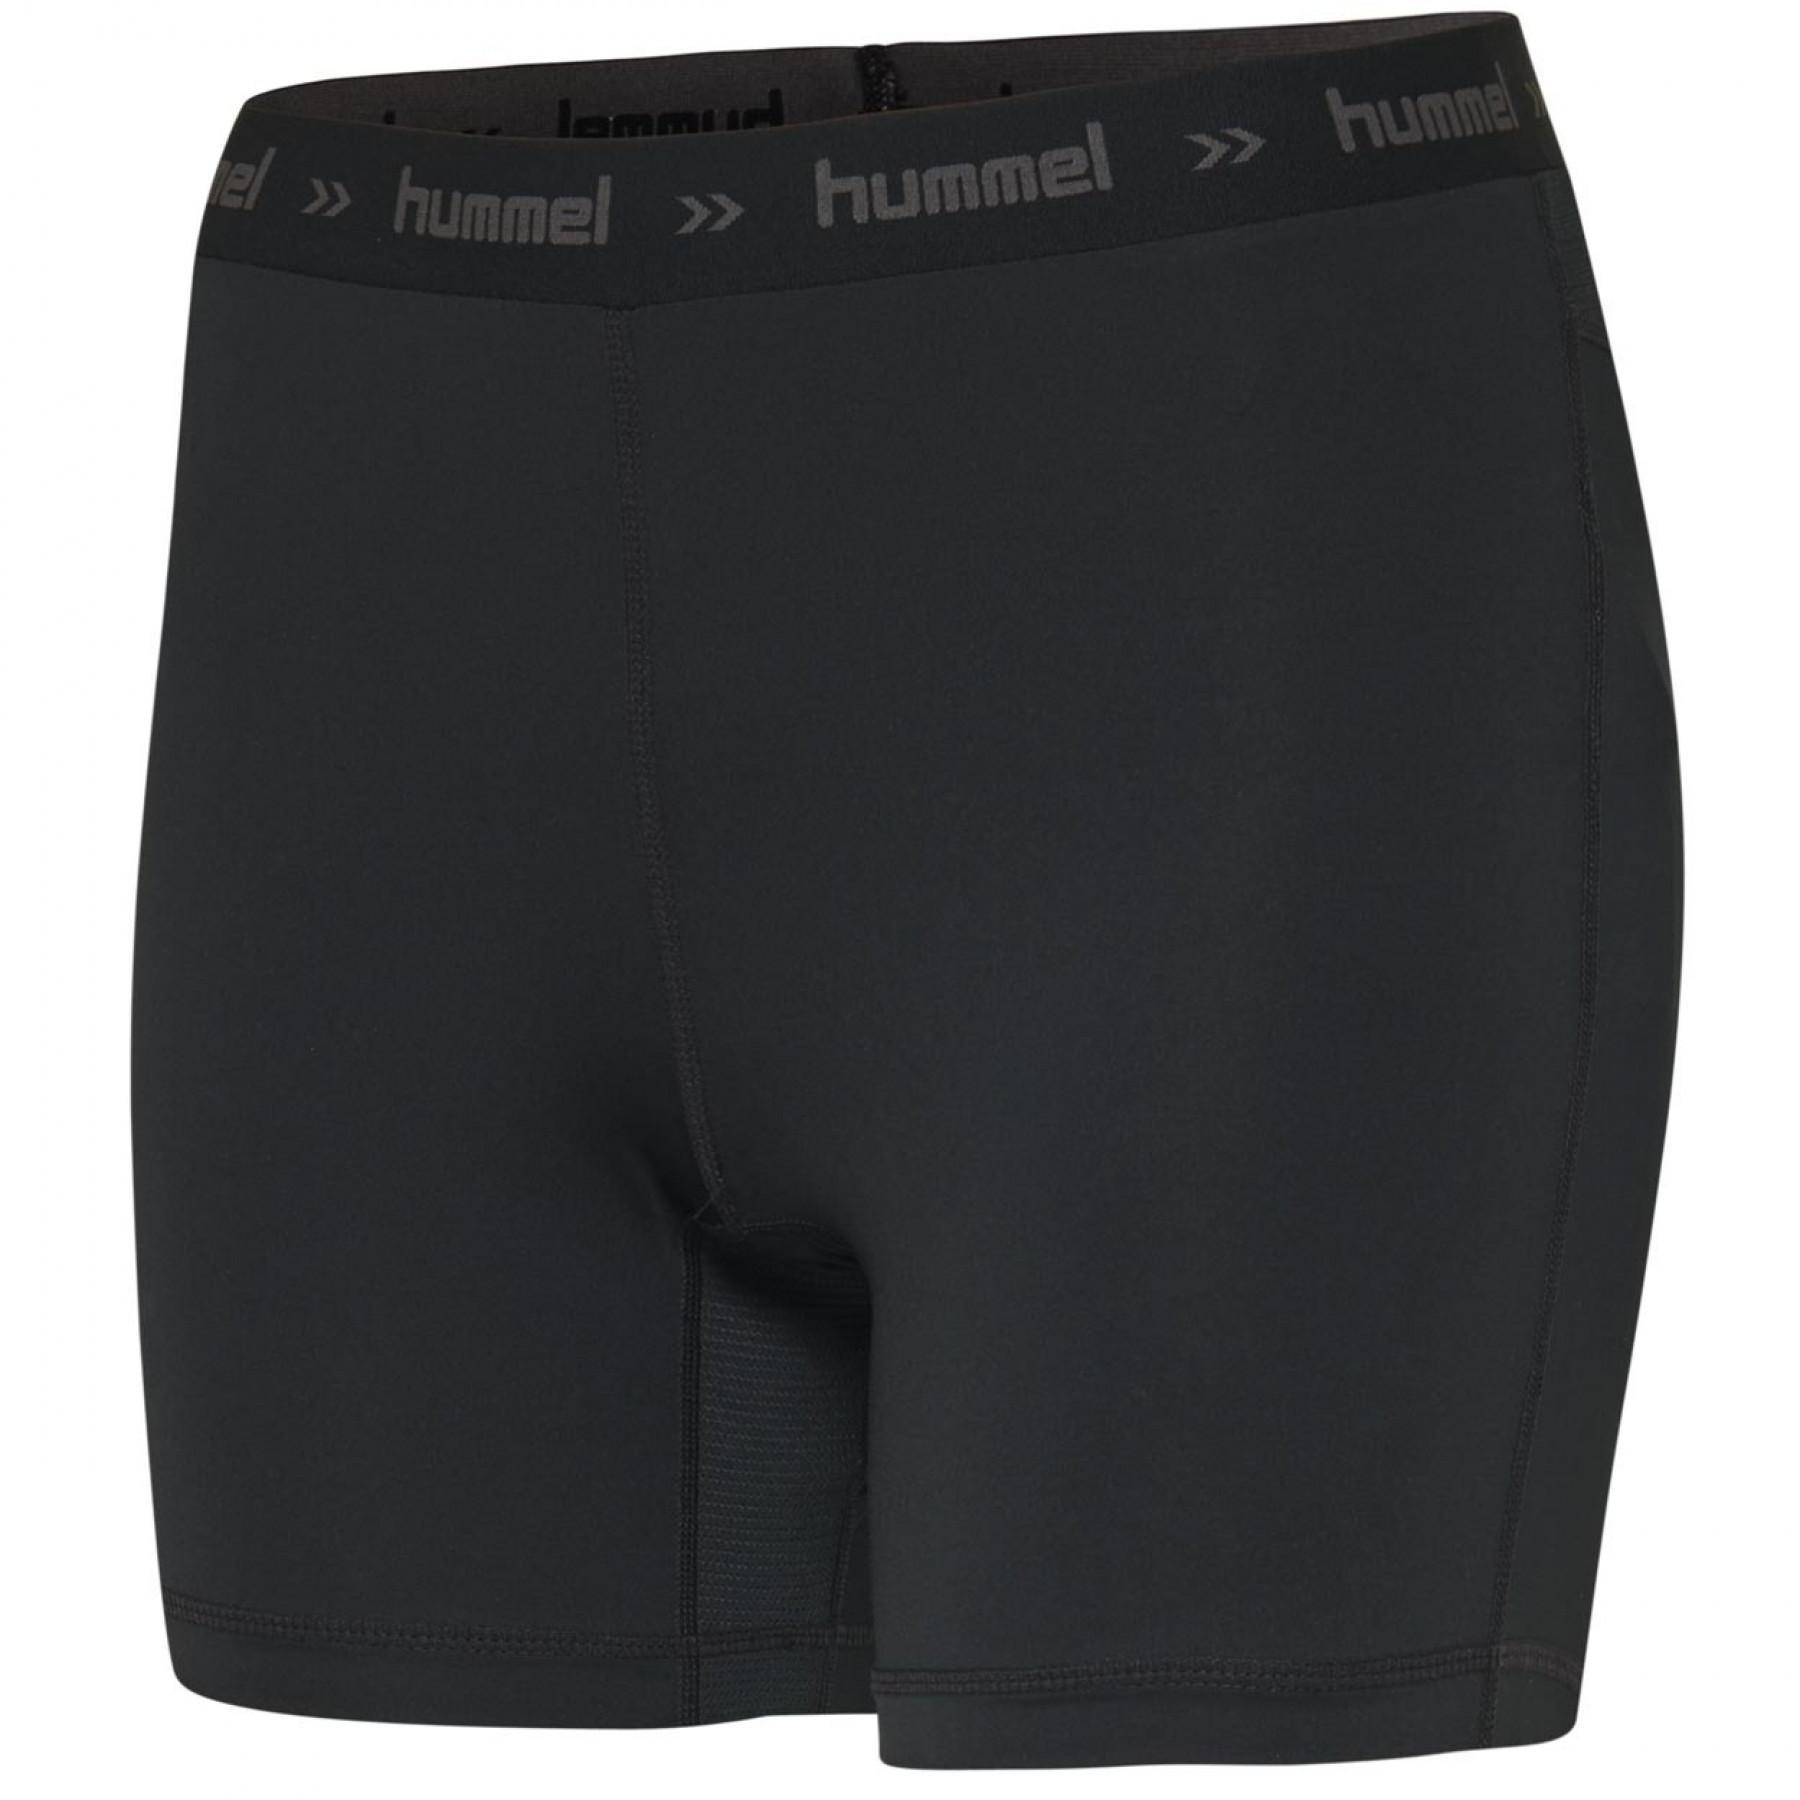 Pantalones cortos Hummel Perofmance